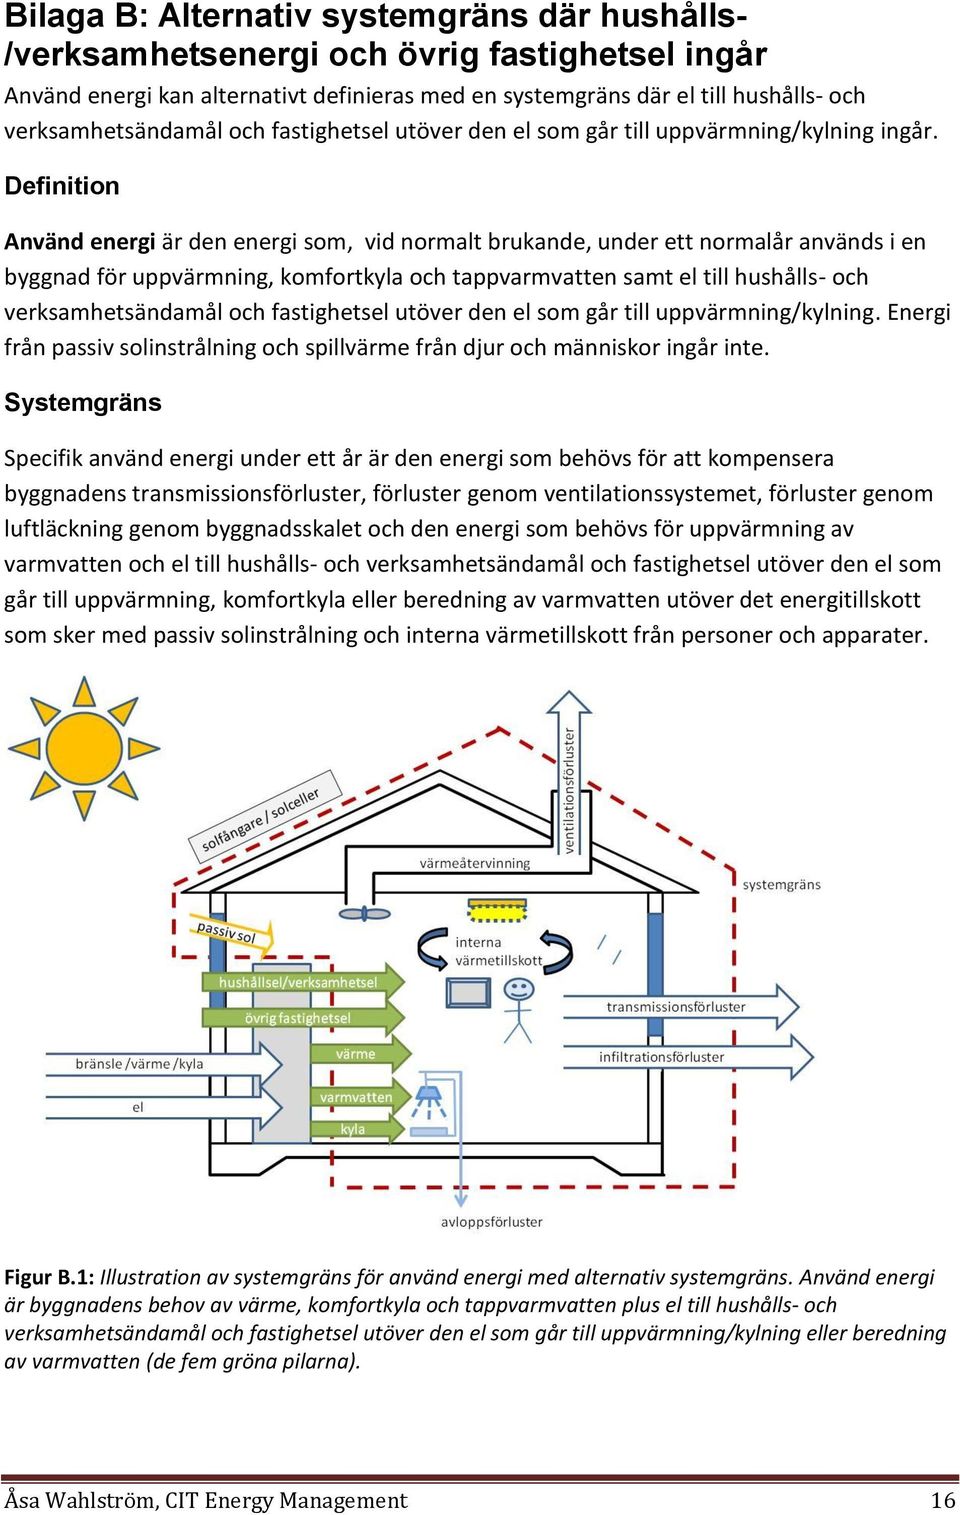 Definition Använd energi är den energi som, vid normalt brukande, under ett normalår används i en byggnad för uppvärmning, komfortkyla och tappvarmvatten samt el till hushålls- och verksamhetsändamål